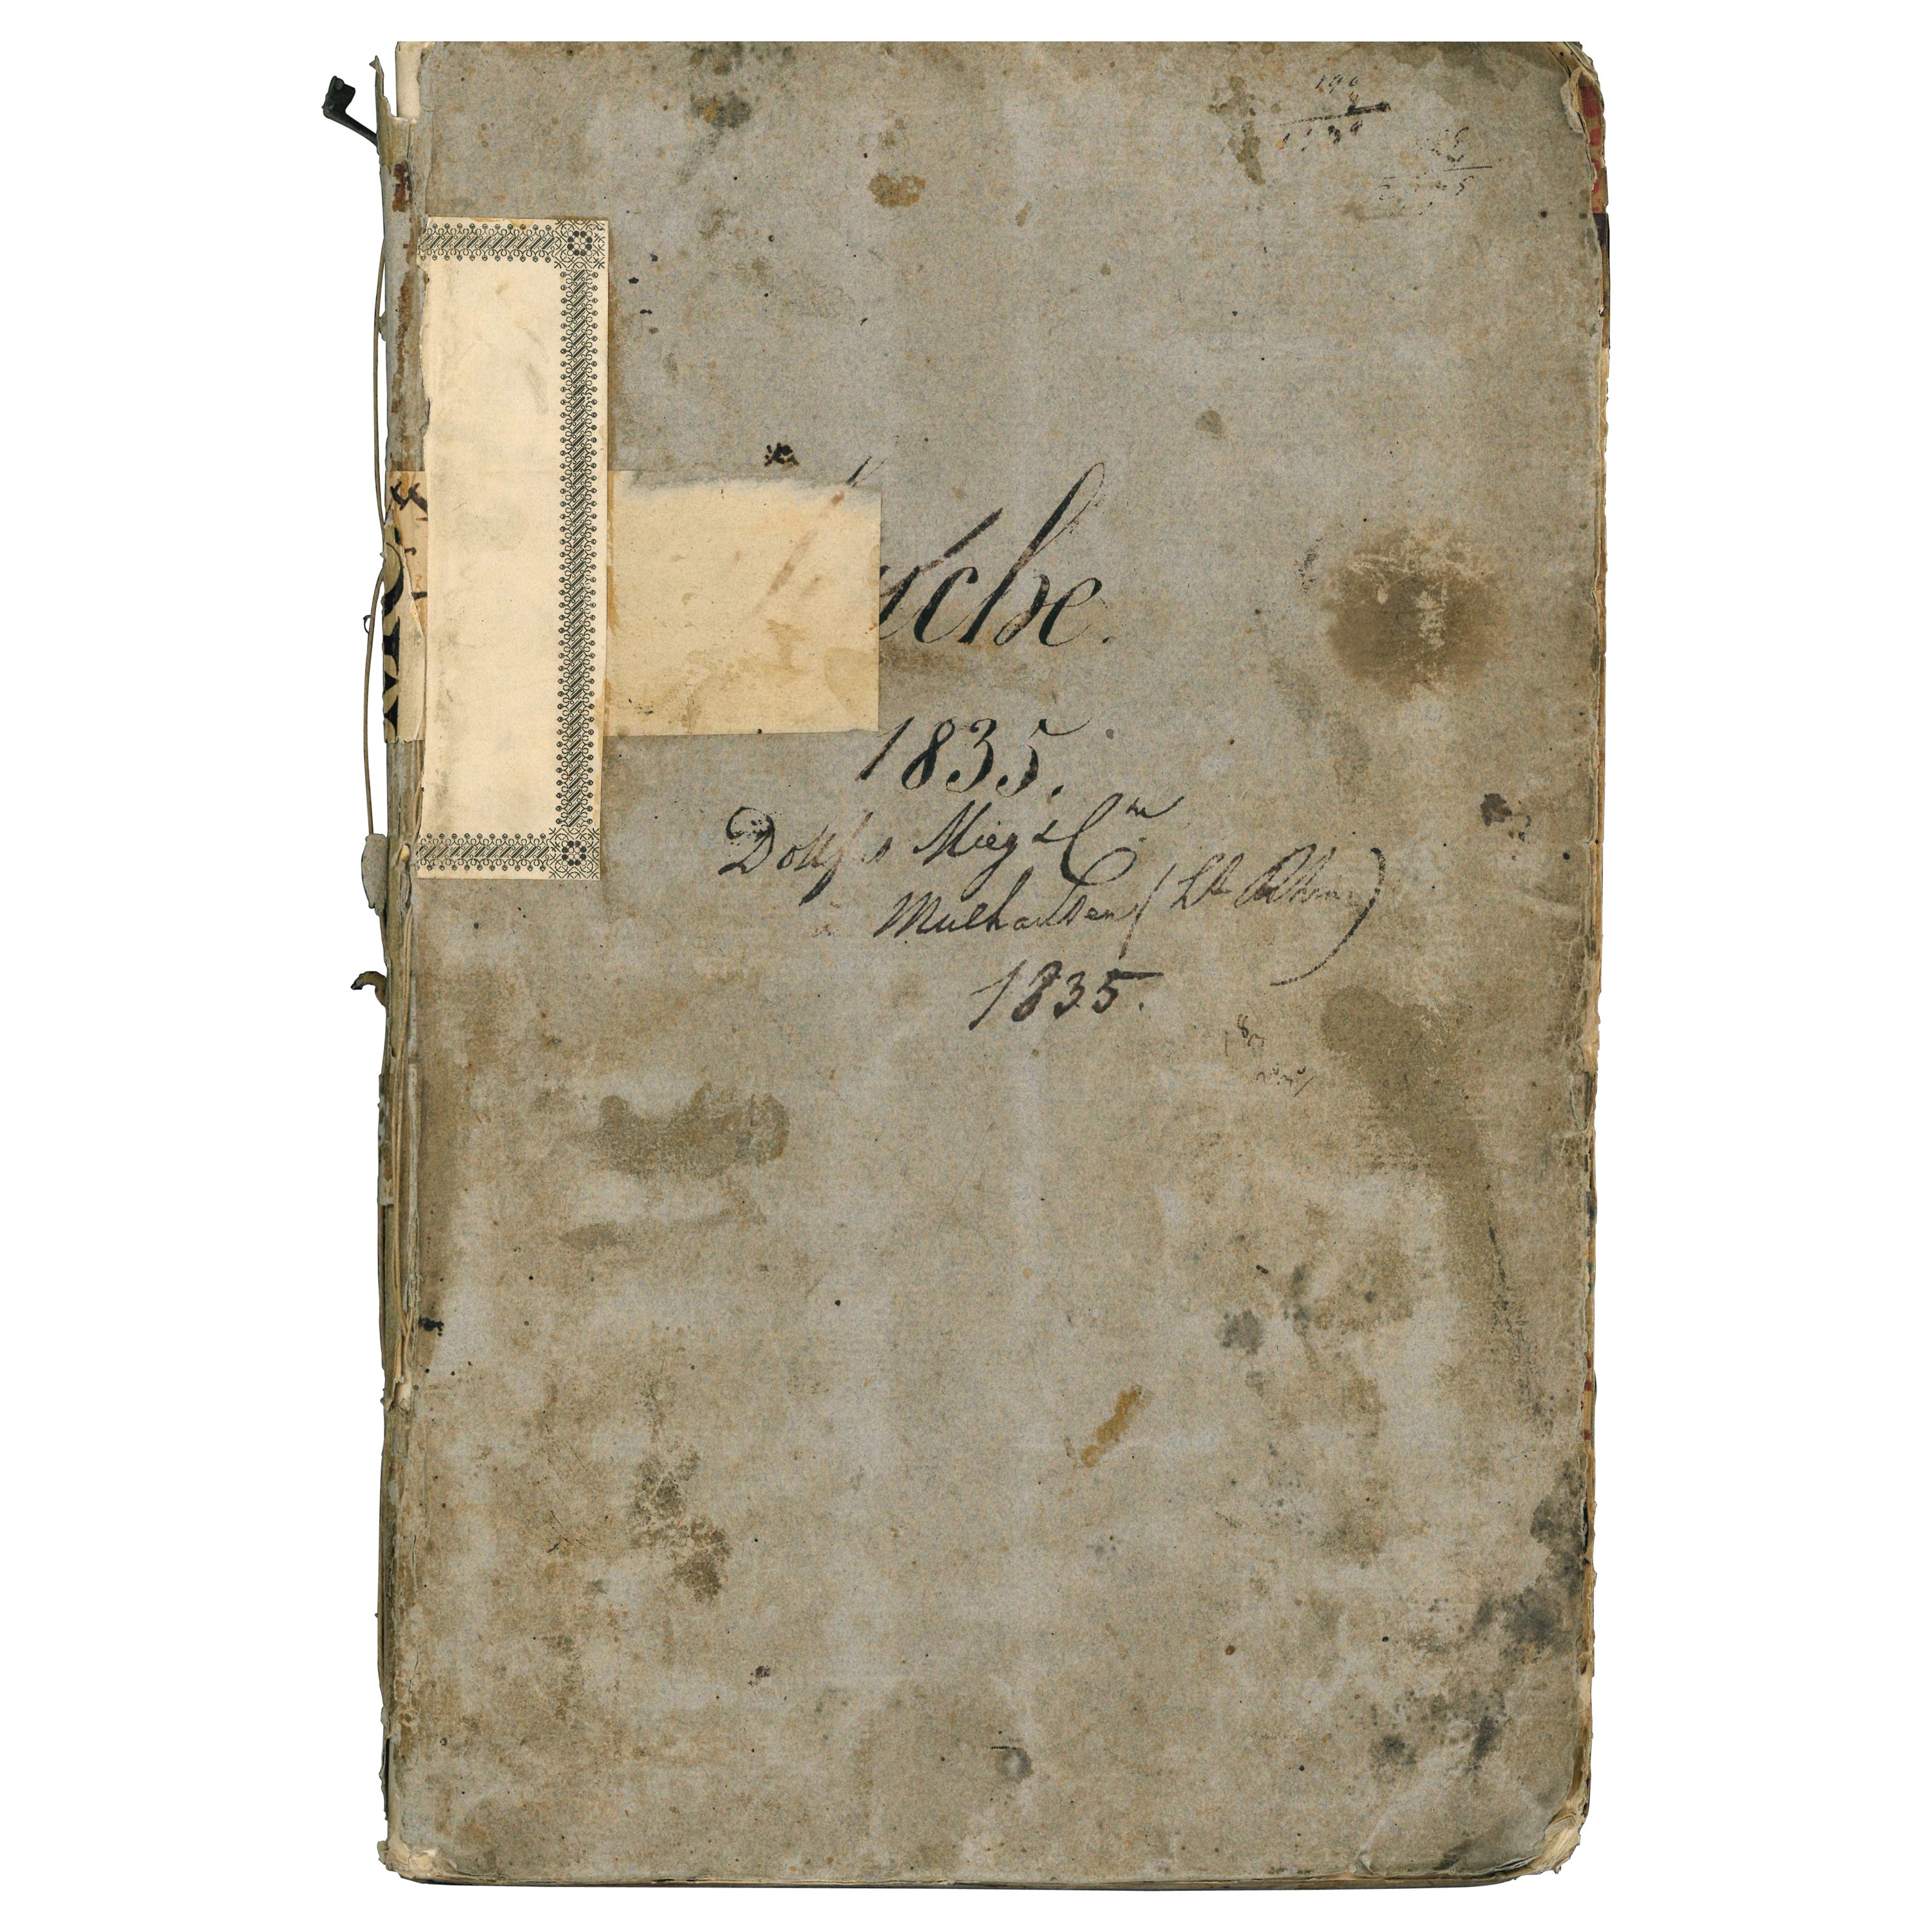 Gewebeprobe-Buch, datiert 1835, von Dollfus Mieg Et Compagnie (Buch)